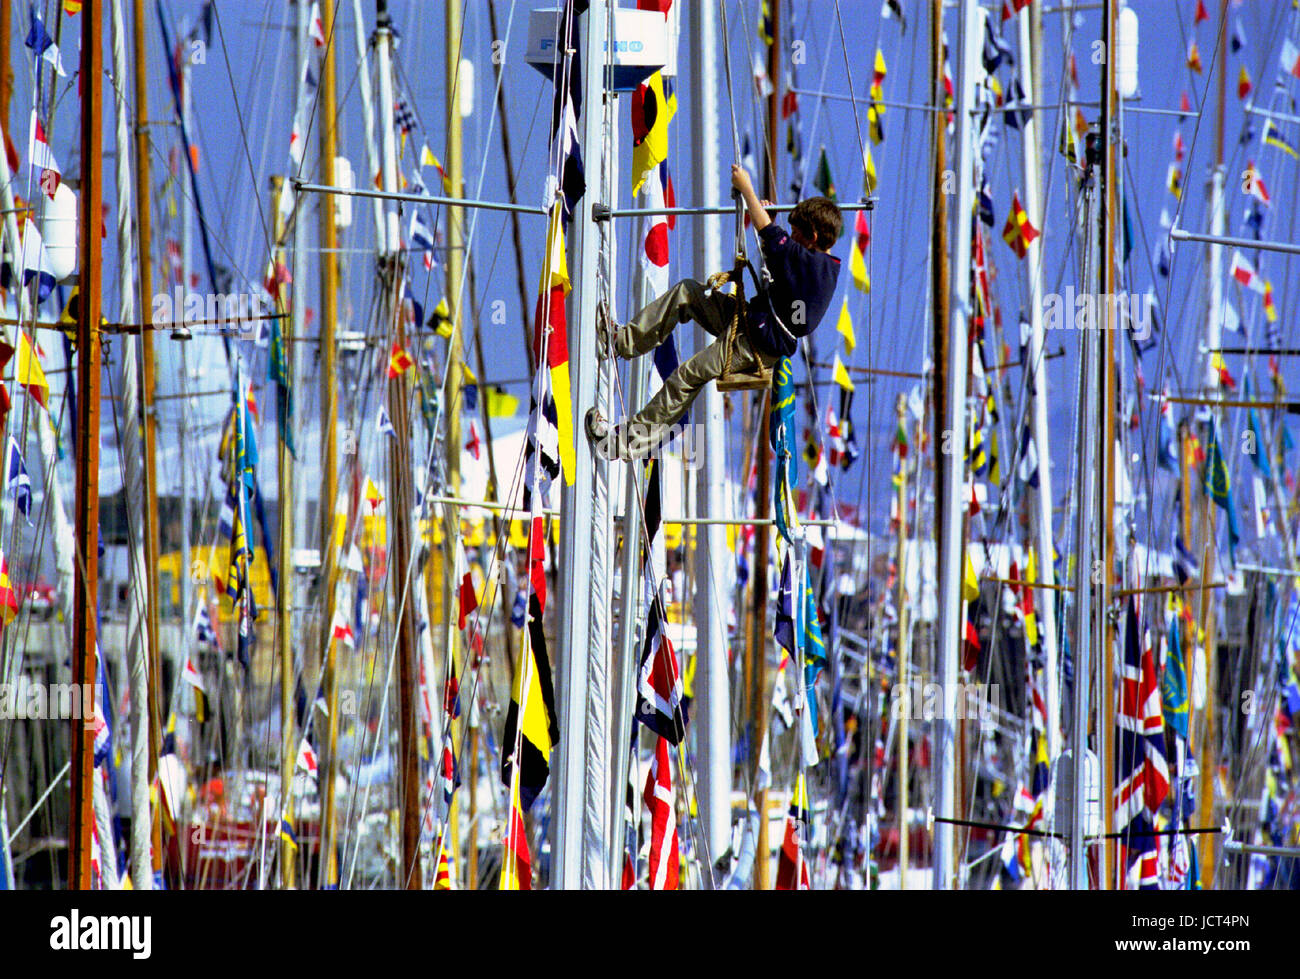 Ein junge Segler in einem Bootsmann Stuhl klettert einen Mast auf dem Festival des Meeres, wenn 1000 Segelschiffe in Portsmouth Naval Dockyard versammelt. Stockfoto